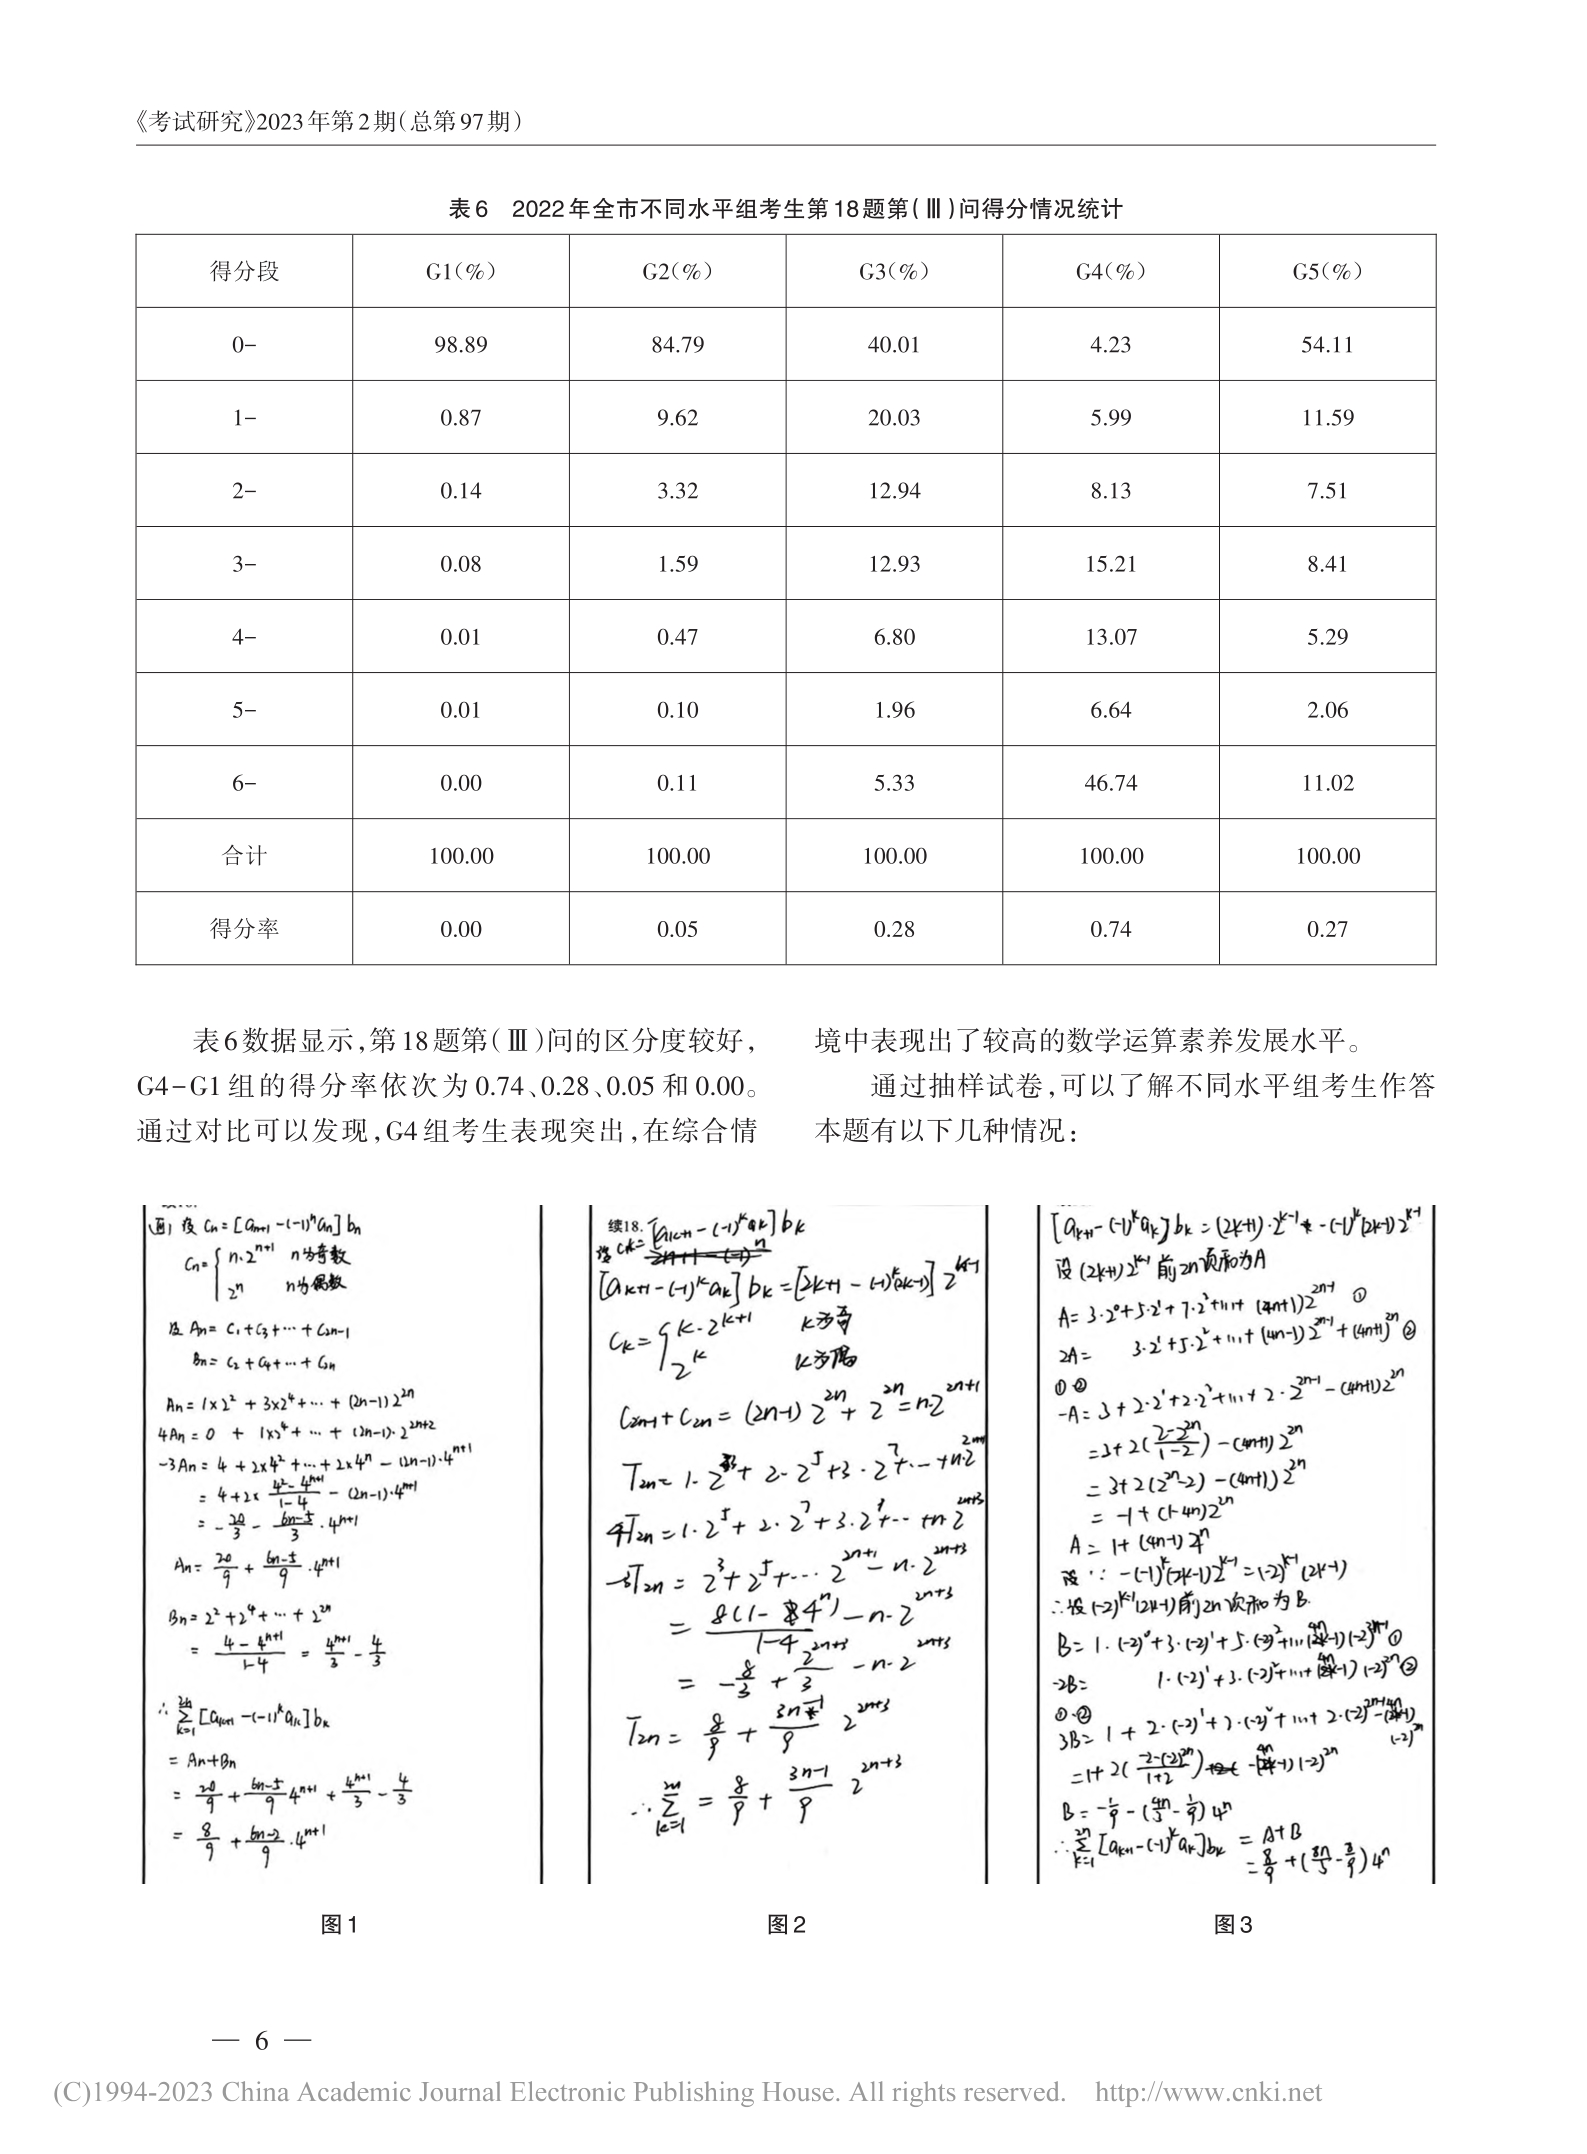 2022高考数学：数学运算素养的水平划分与评价_李瑛_6.jpg